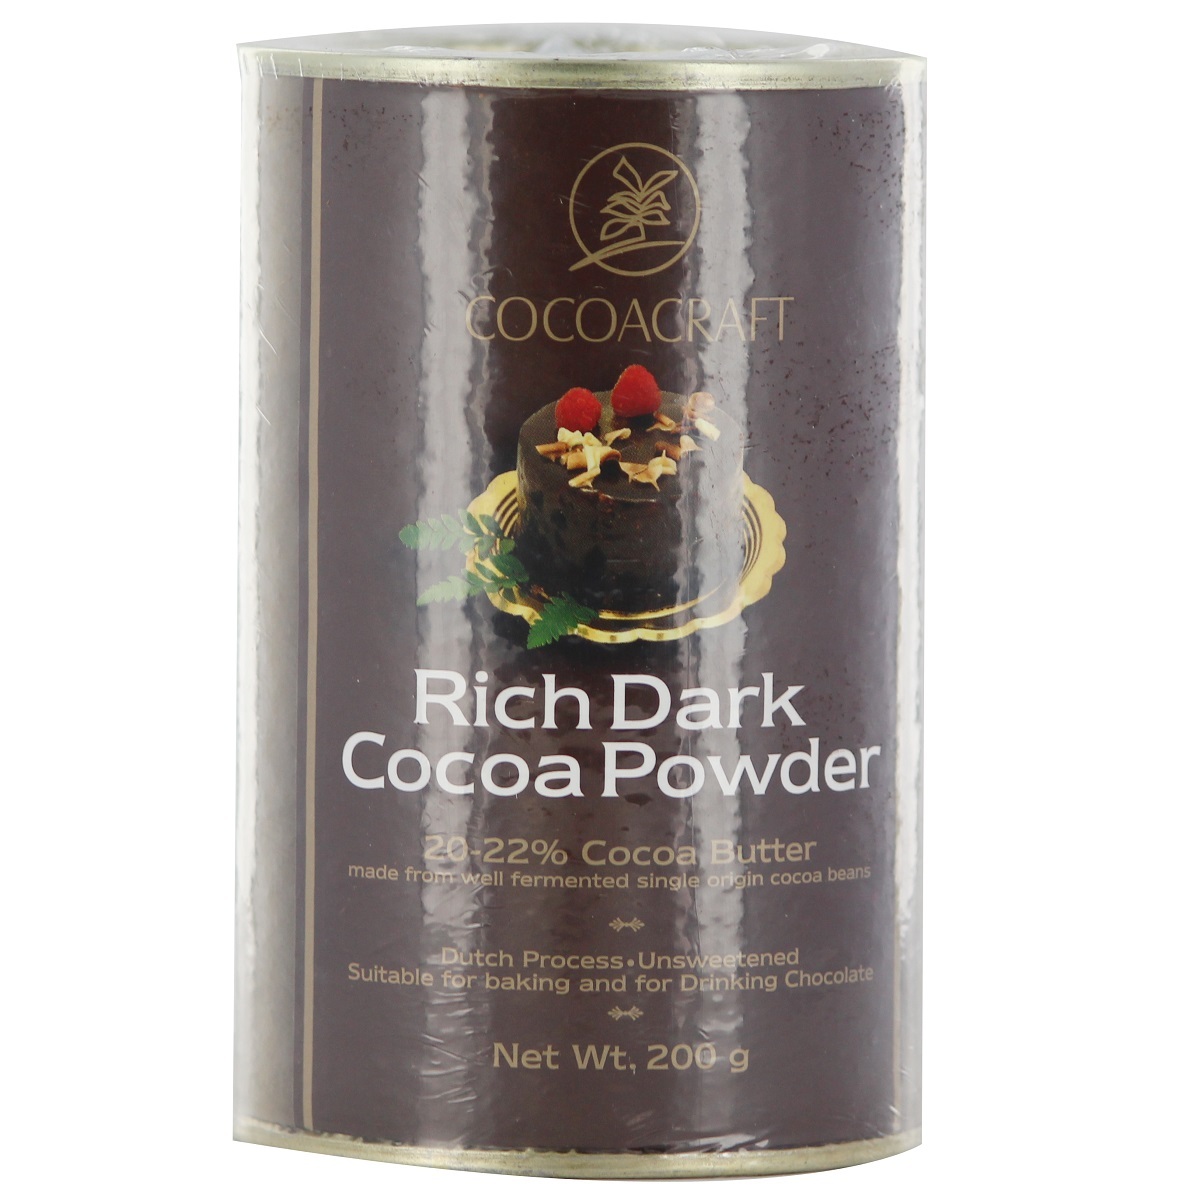 Cocoa Craft Rich Dark Cocoa Powder 200g